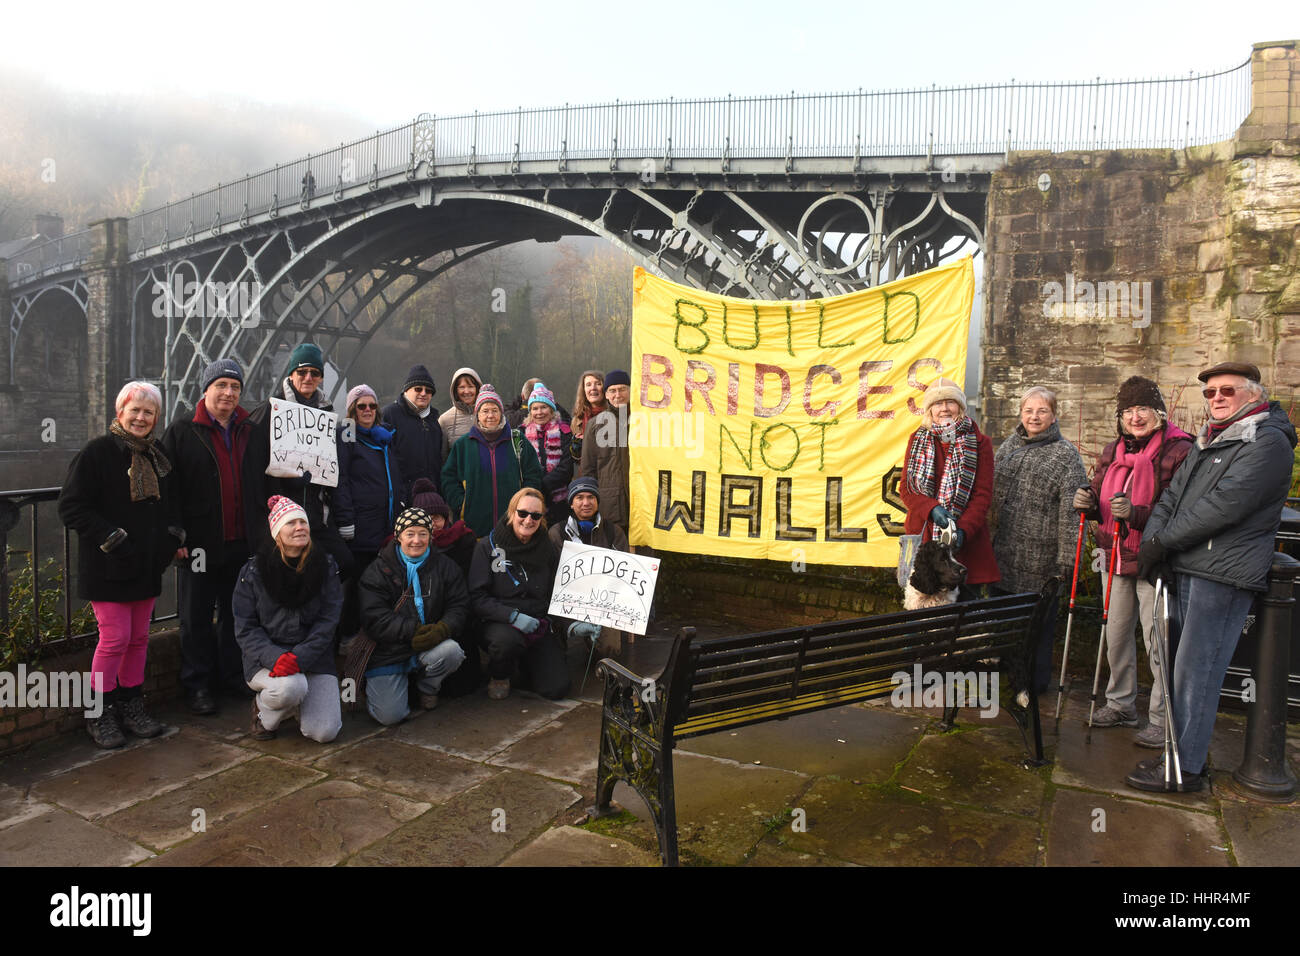 Construire des ponts et non des murs les militants qui font campagne contre la politique de Donald Trump à côté du plus vieux Ironbridge au monde. Crédit : David Bagnall Banque D'Images